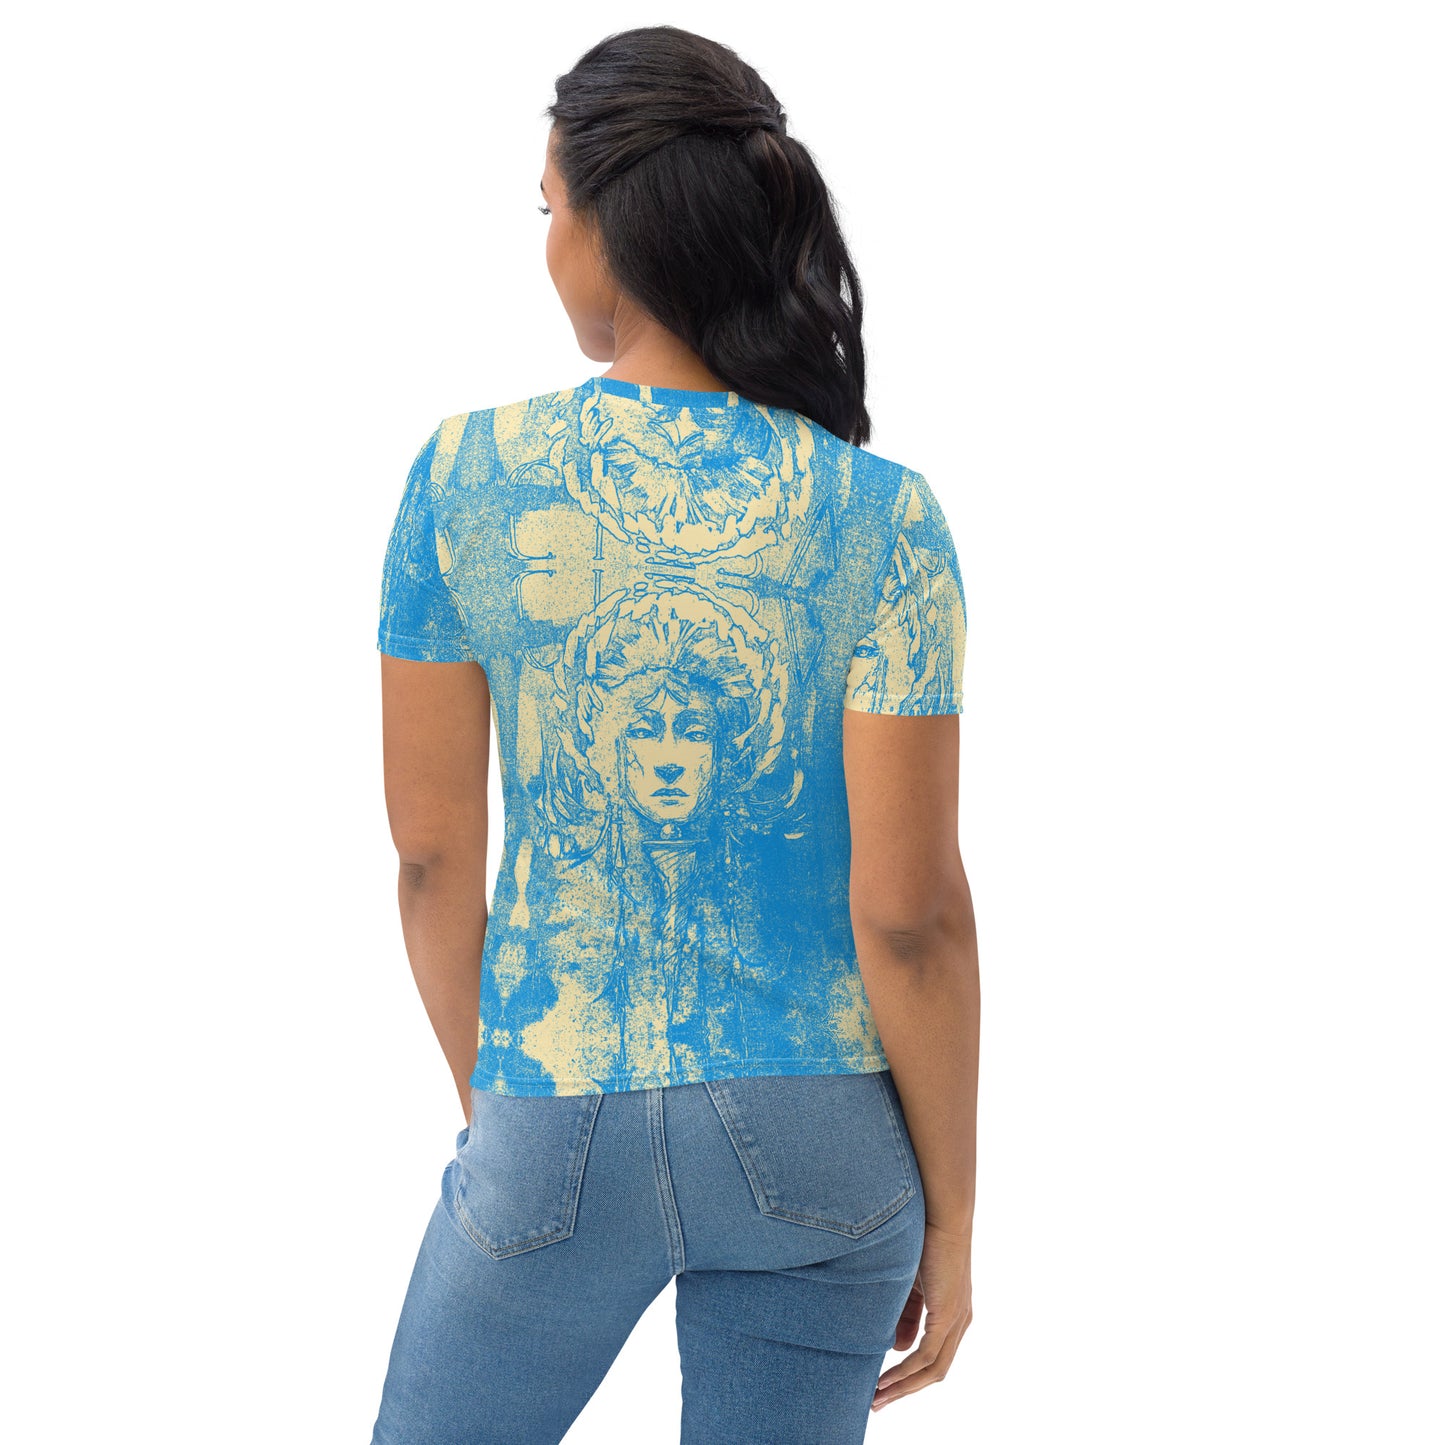 BLUE CITRV Women's T-shirt